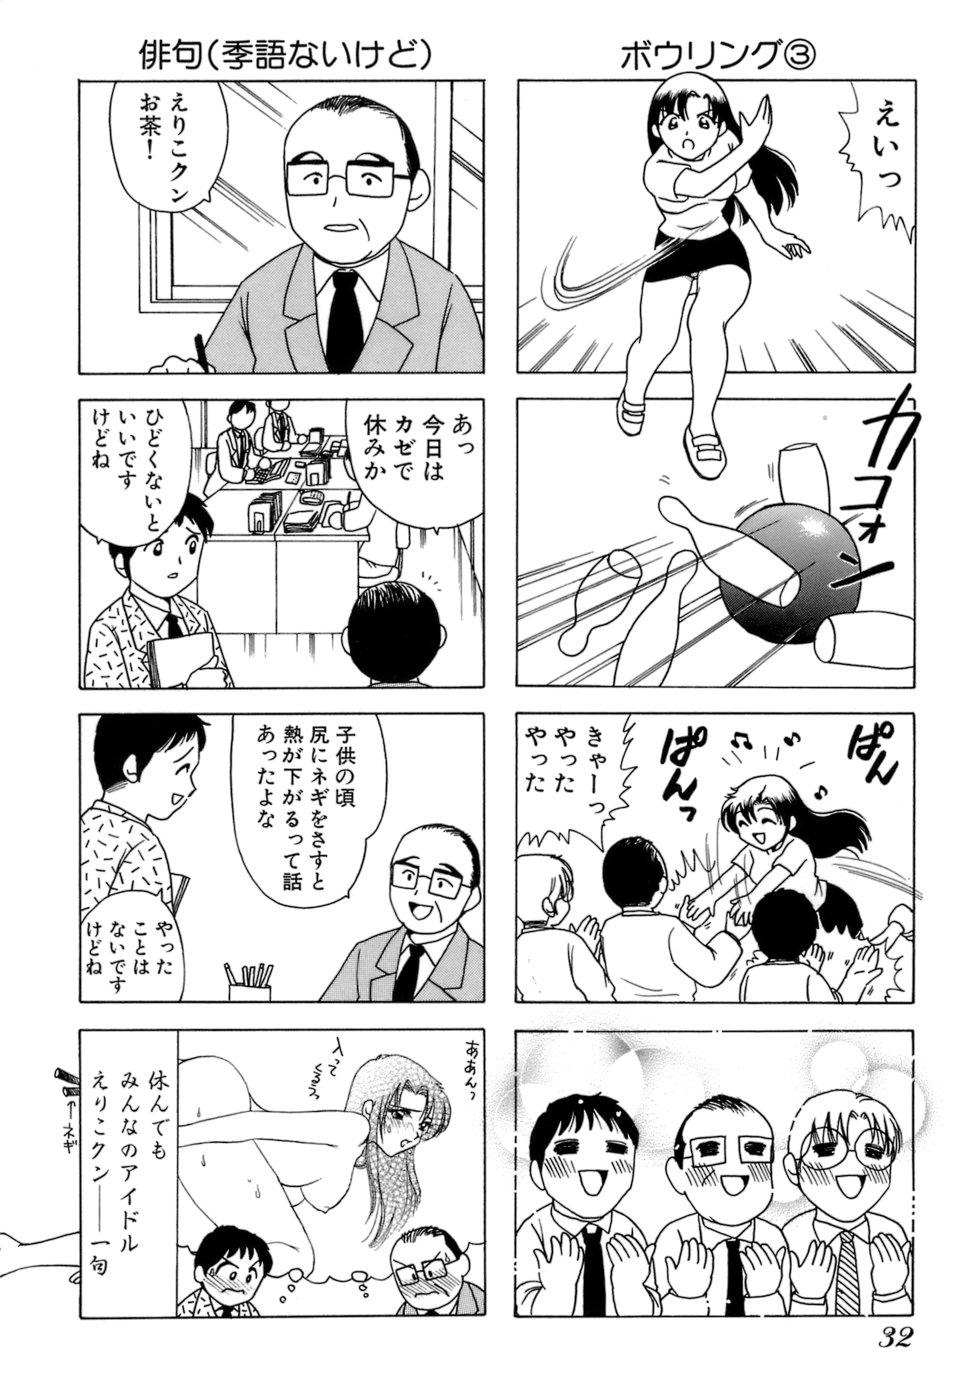 Eriko-kun, Ocha!! Vol.01 34